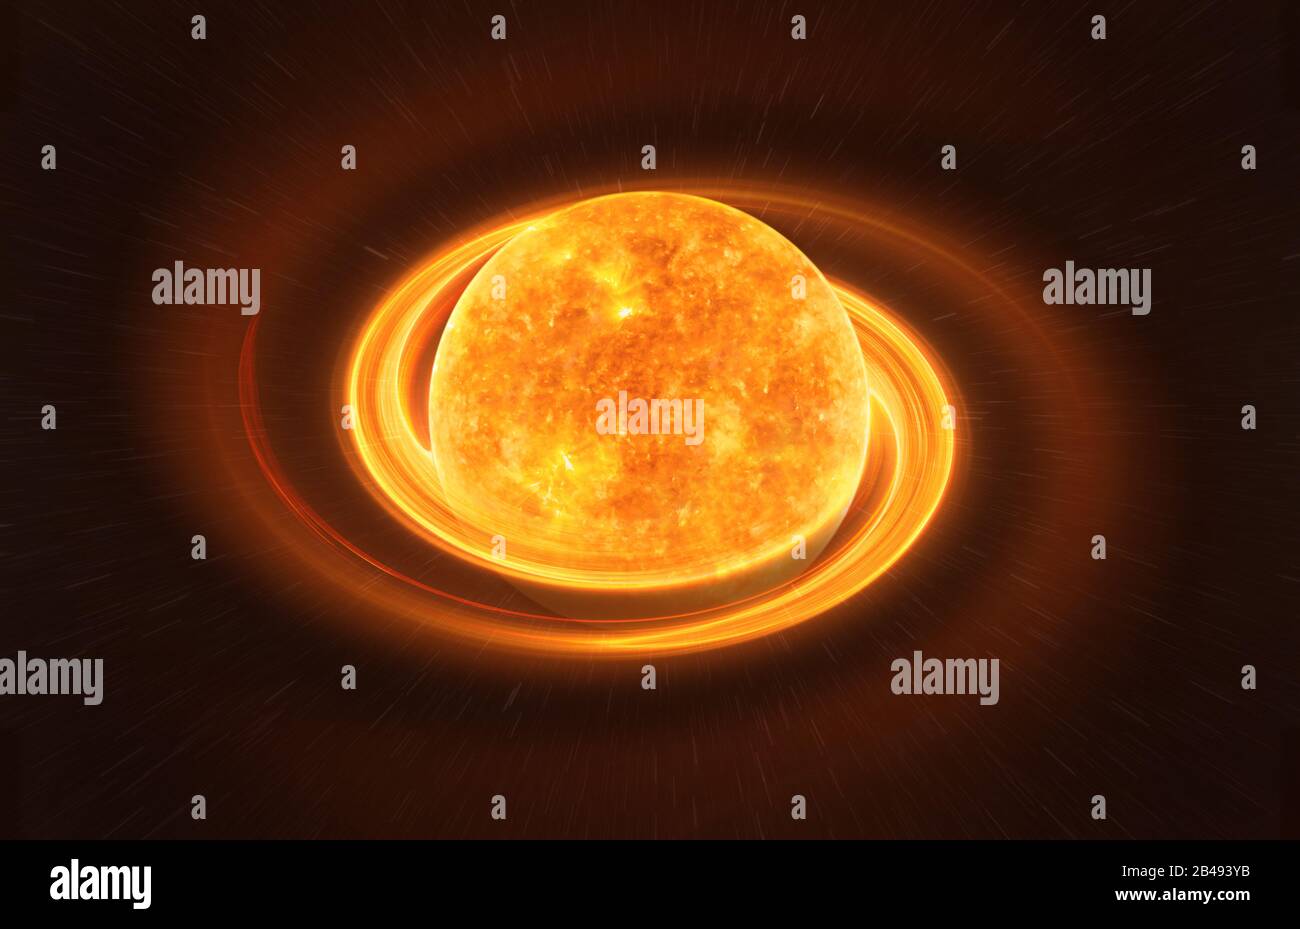 Heller Neutronenstern gegen dunkle Sternenhimmel, Elemente dieses Bildes, das von der NASA eingerichtet wurde Stockfoto